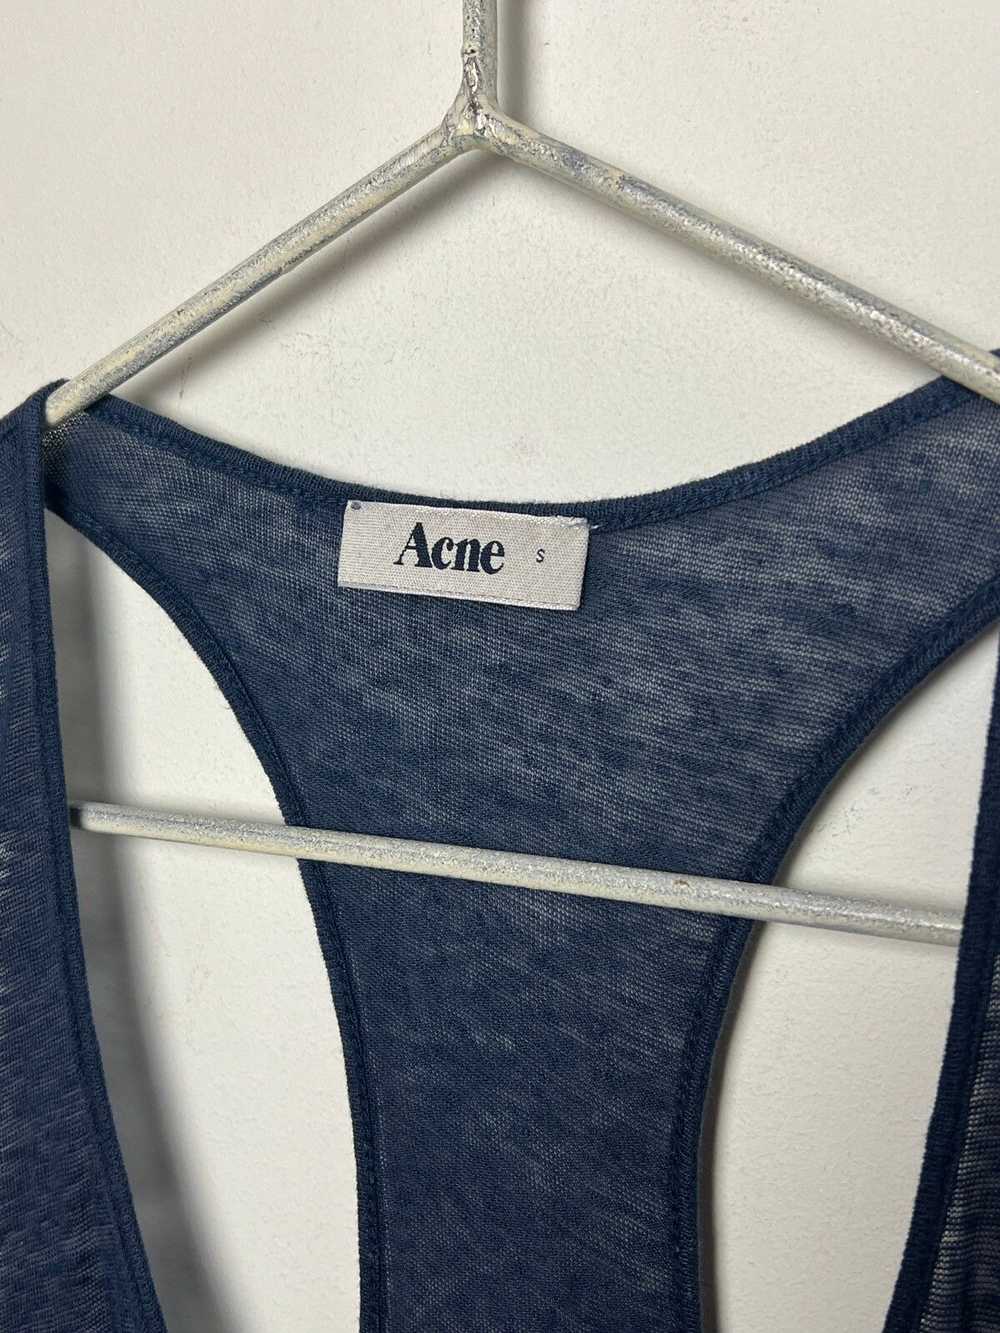 Acne Studios × Archival Clothing × Vintage acne y… - image 4